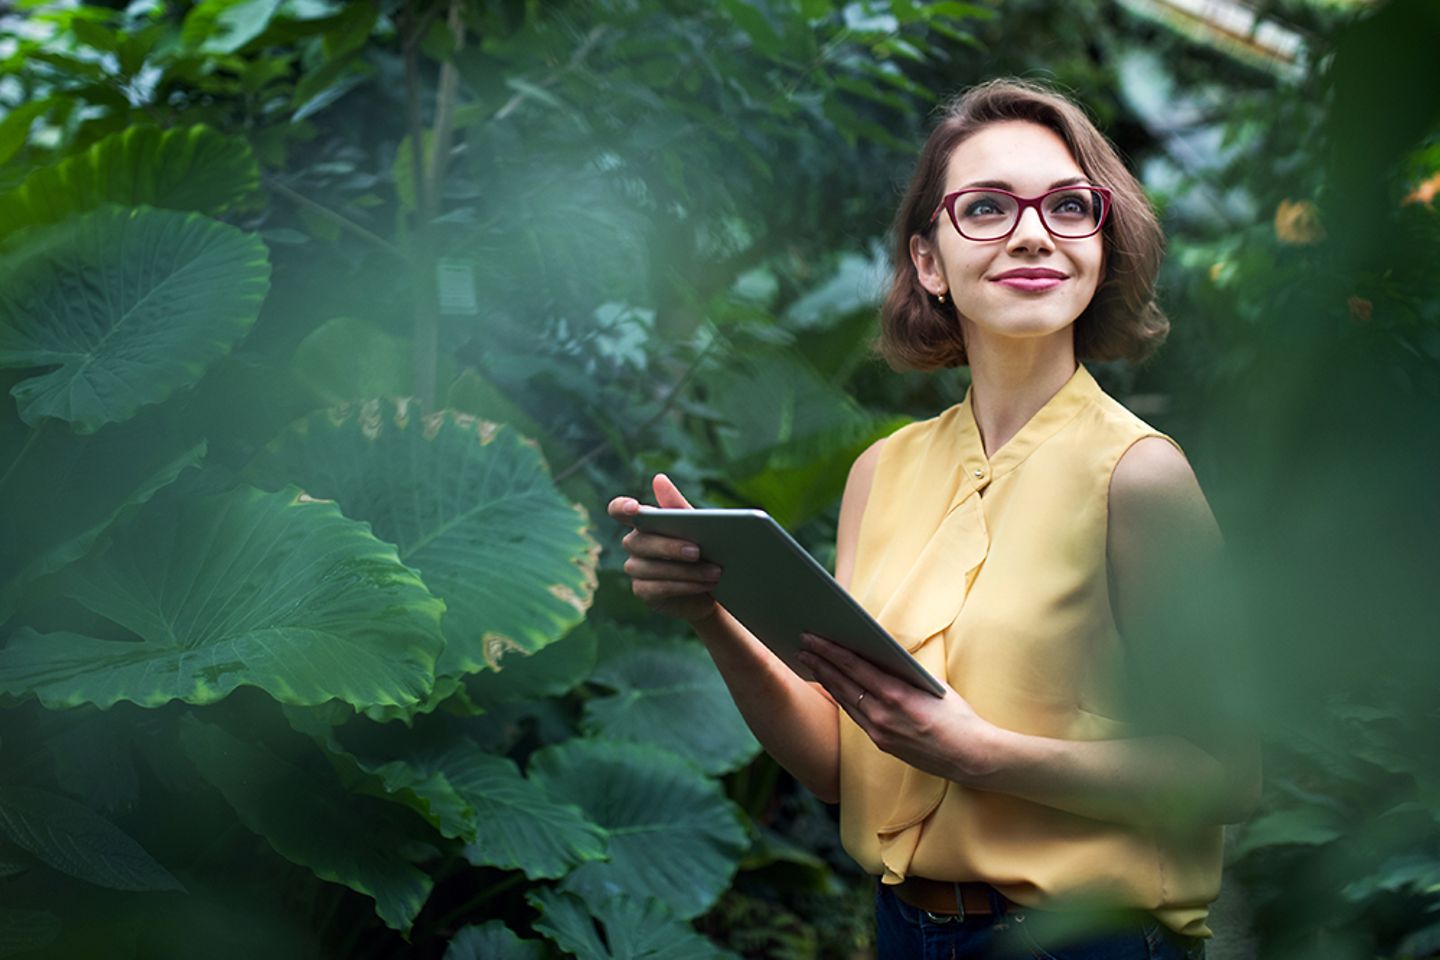 Mulher sorridente com um tablet na mão, cercada por plantas